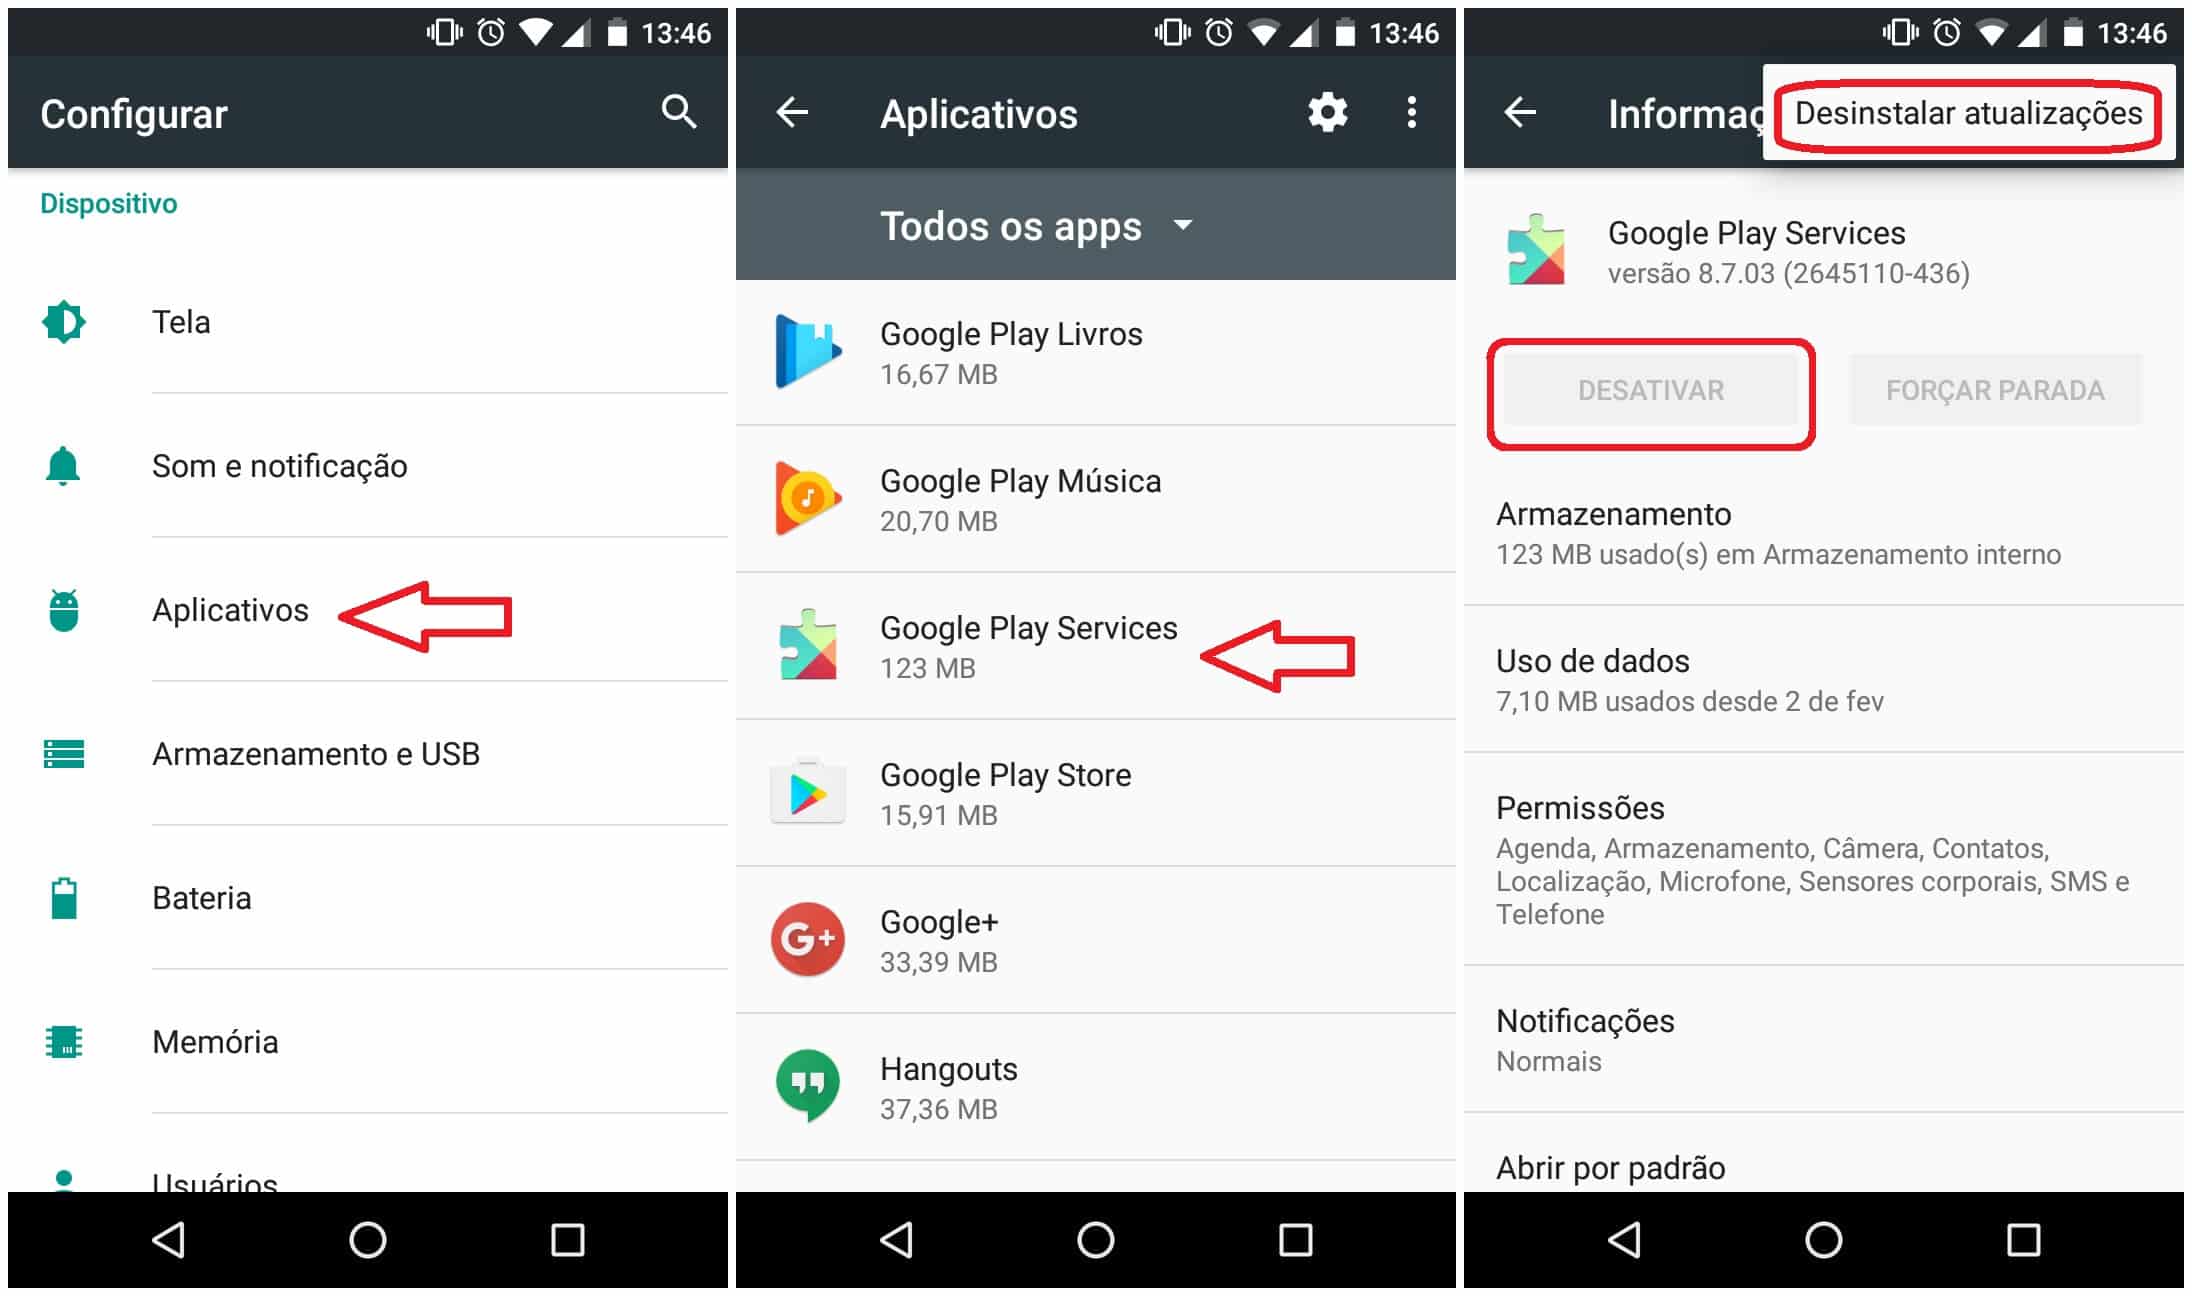 Desinstale os serviços do Google Play Services do seu dispositivo Android
Abra as Configurações do seu dispositivo